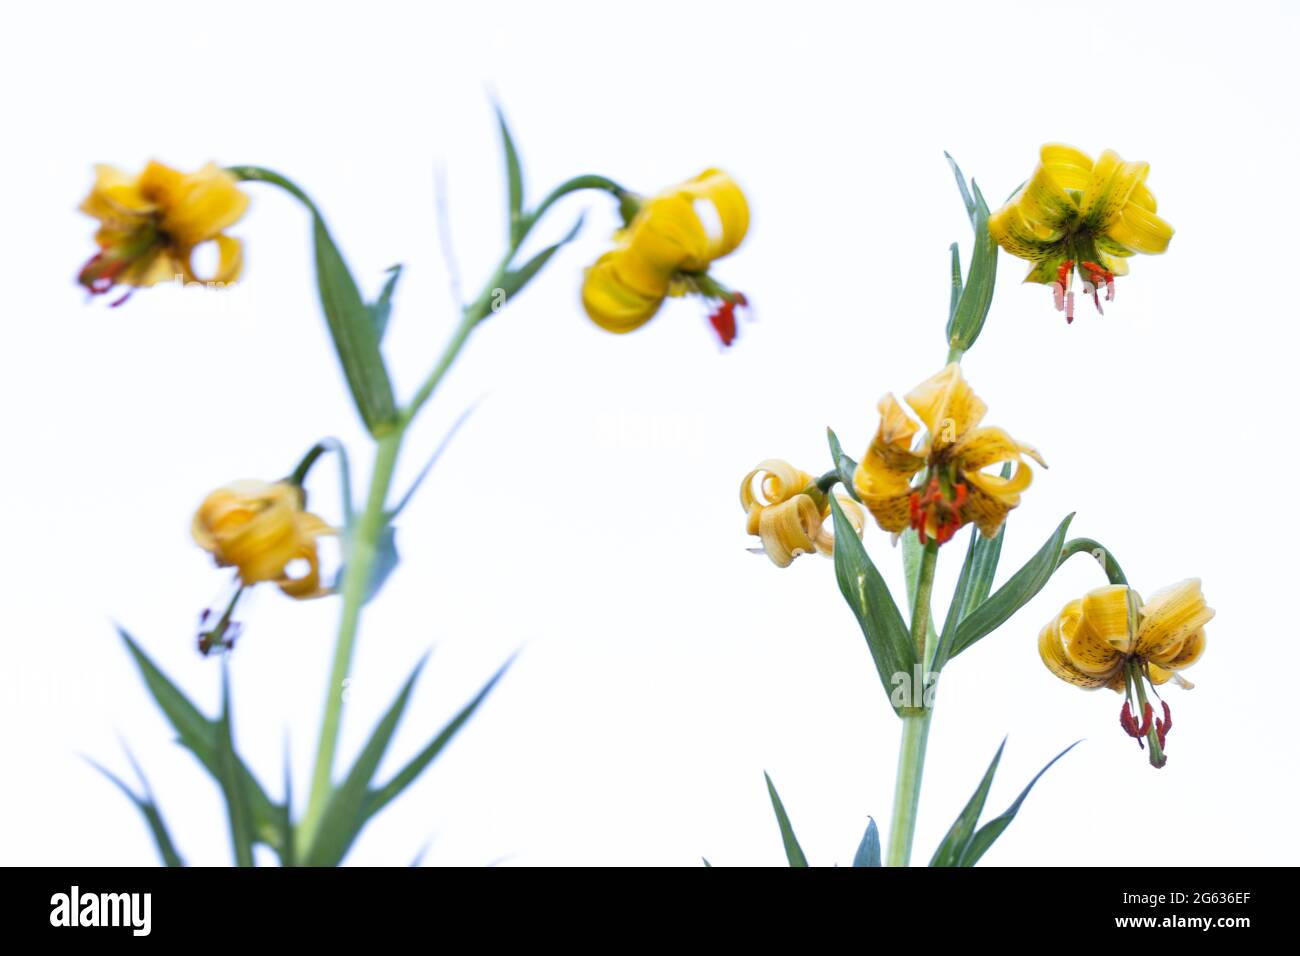 Pyrenean Lily (Lilium pyrenaicum) on white background Stock Photo